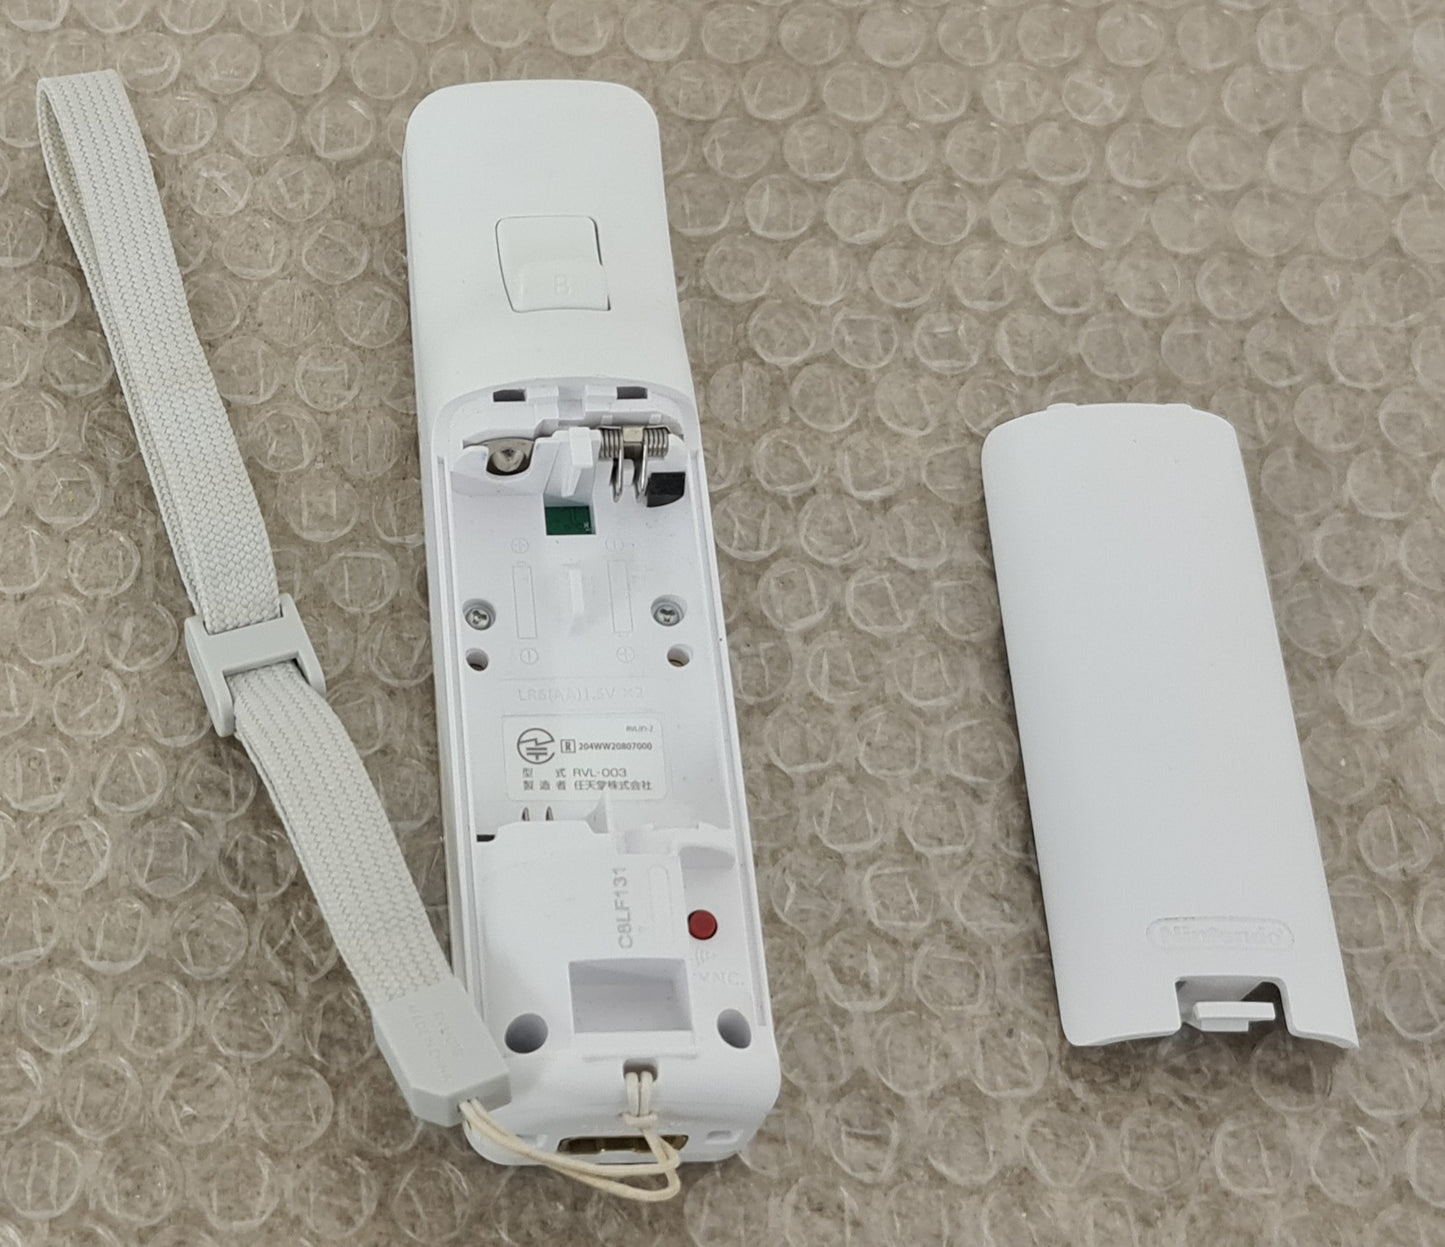 Official White Nintendo Wii Controller VGC